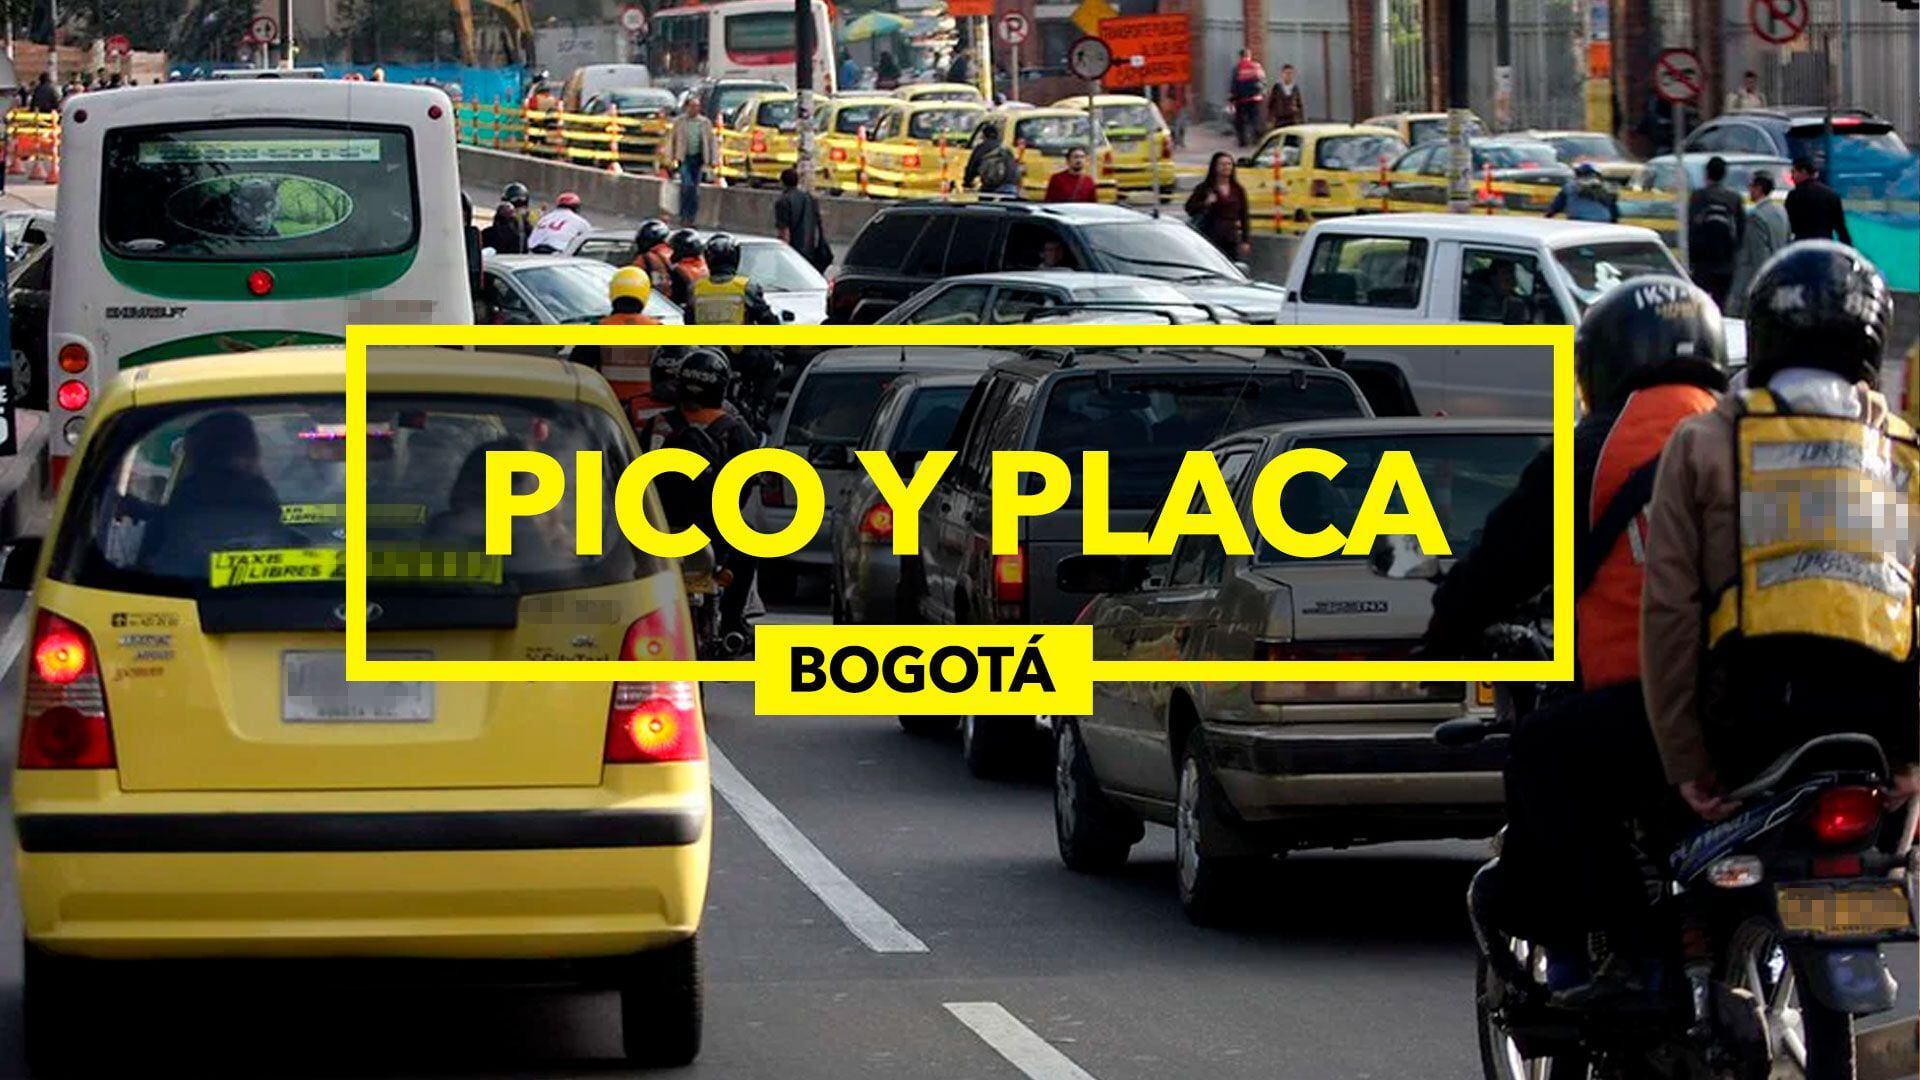 Sobre las 8:00 p. m. finalizó el pico y placa regional en Bogotá - crédito Montaje Infobae